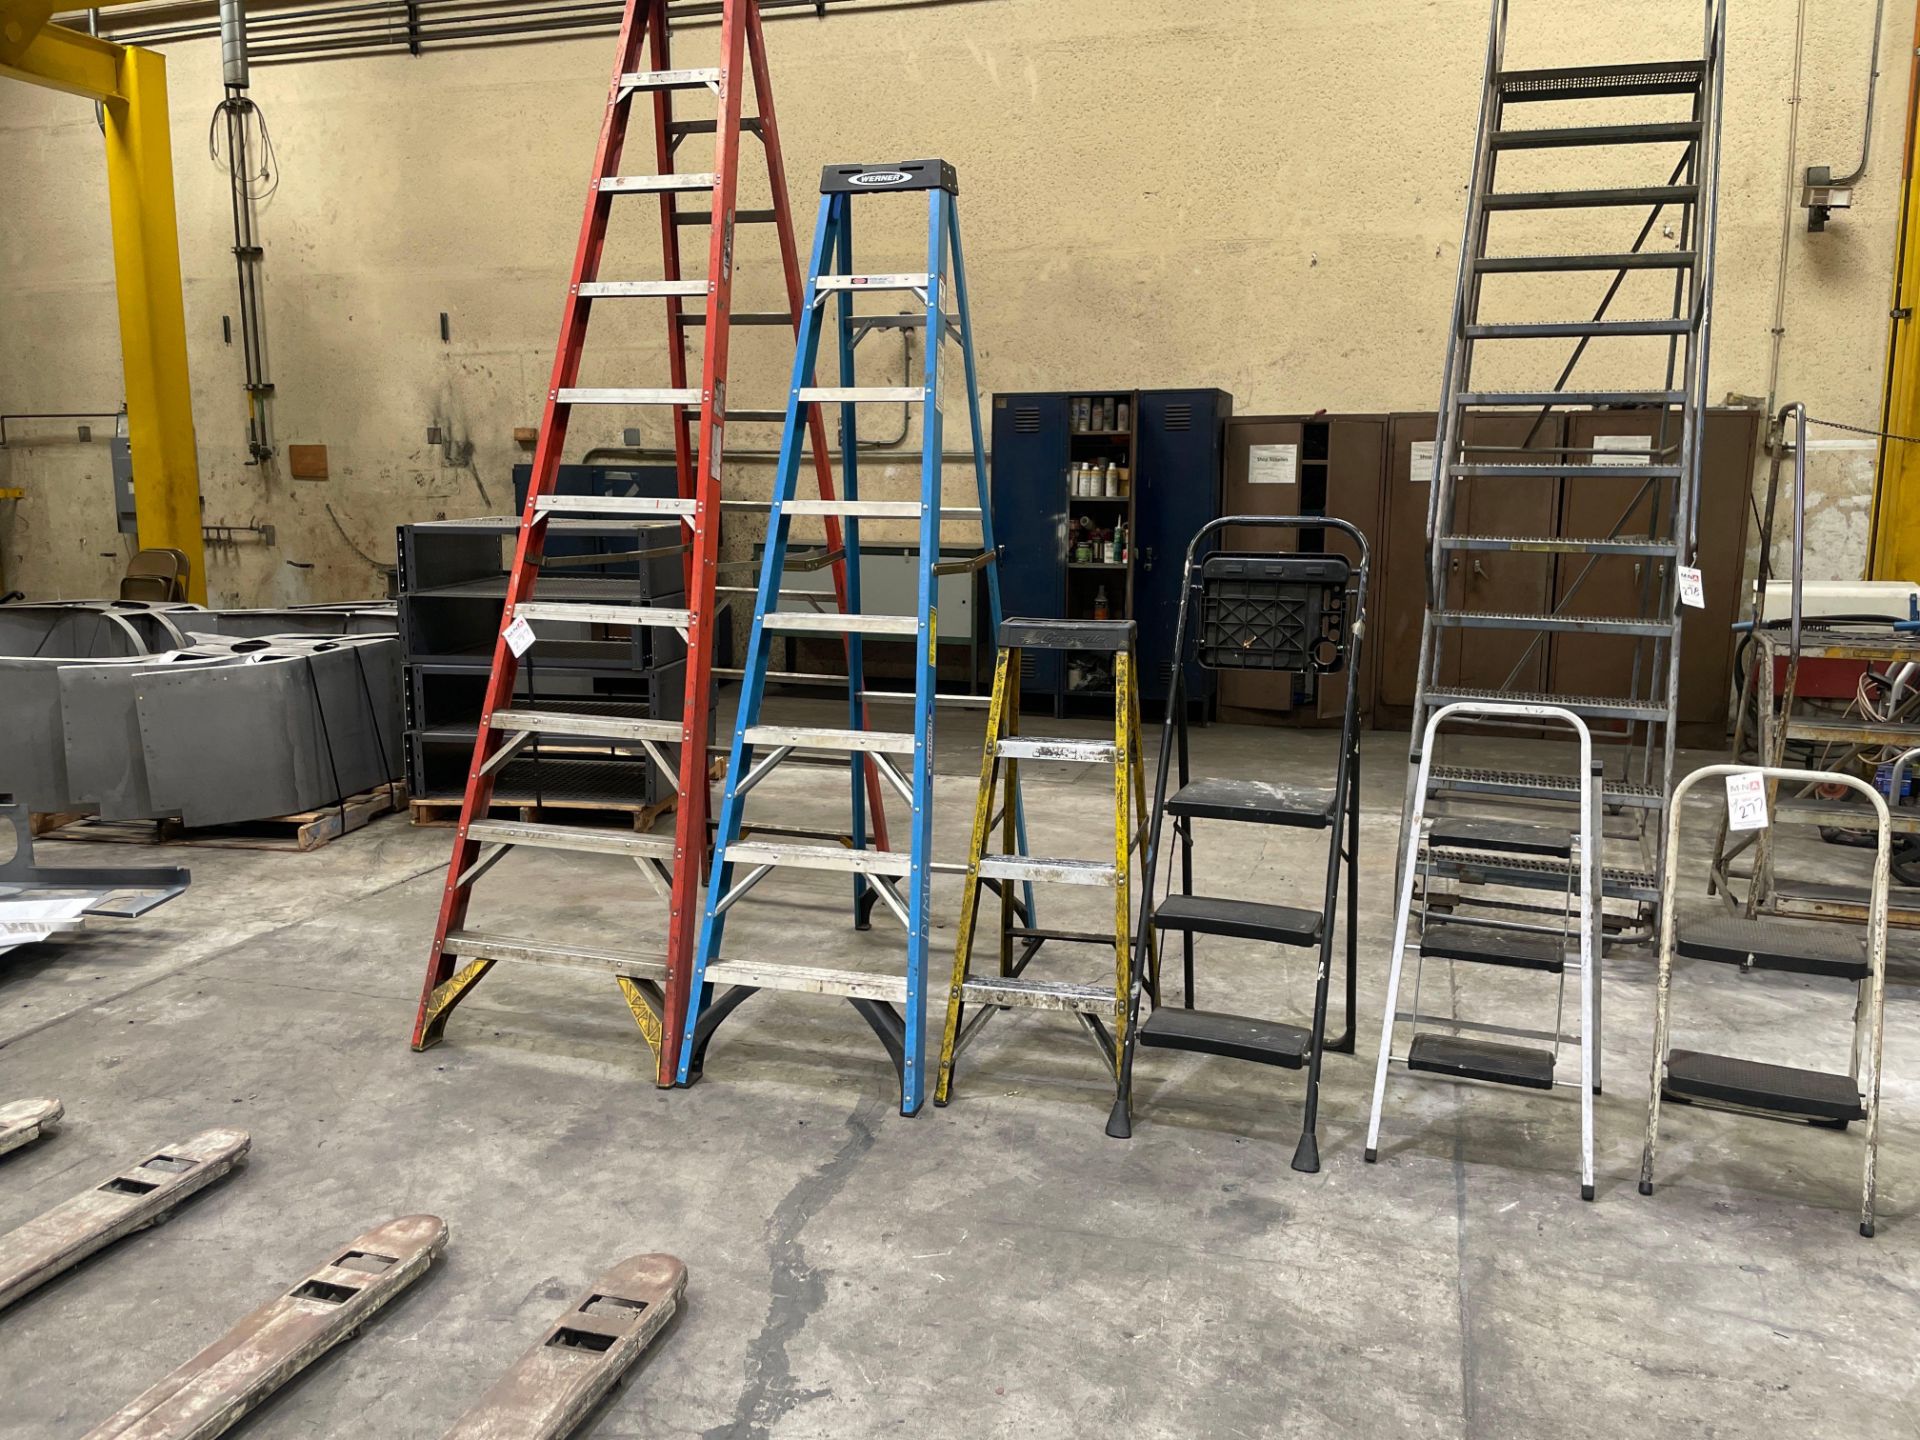 10' Werner Ladder, 8' Werner Ladder, 4' Louisville Ladder, & (3) Step Ladders